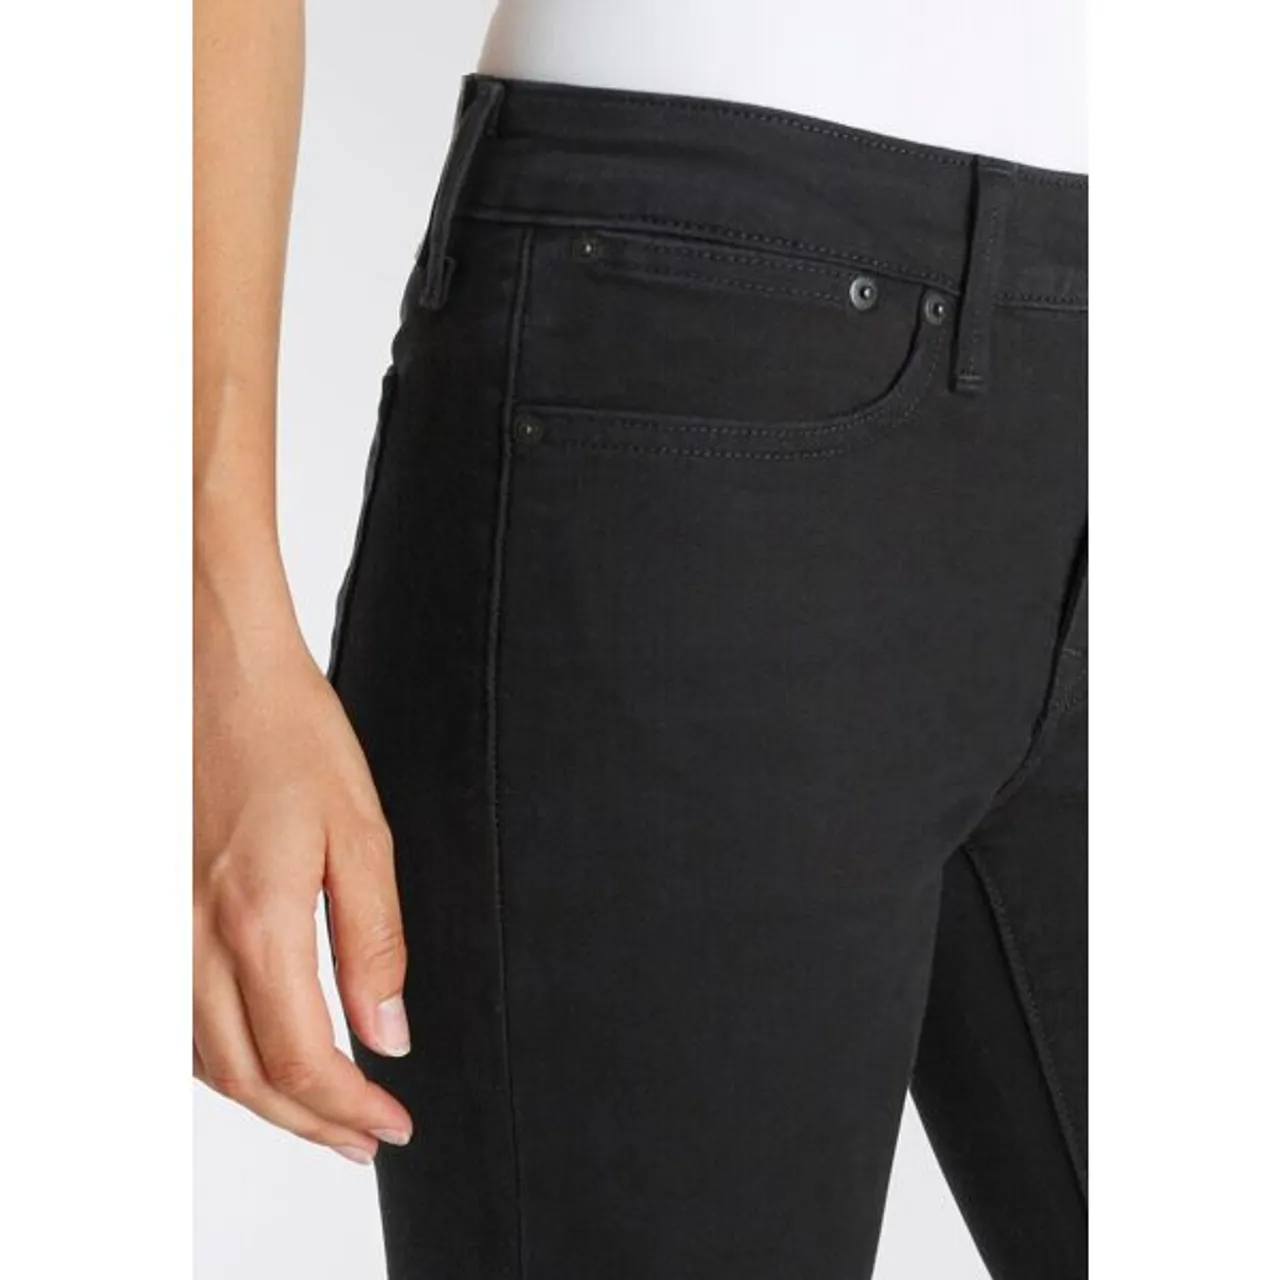 Slim-fit-Jeans LEVI'S "712 SLIM WELT POCKET" Gr. 28, Länge 32, schwarz (night black) Damen Jeans Röhrenjeans